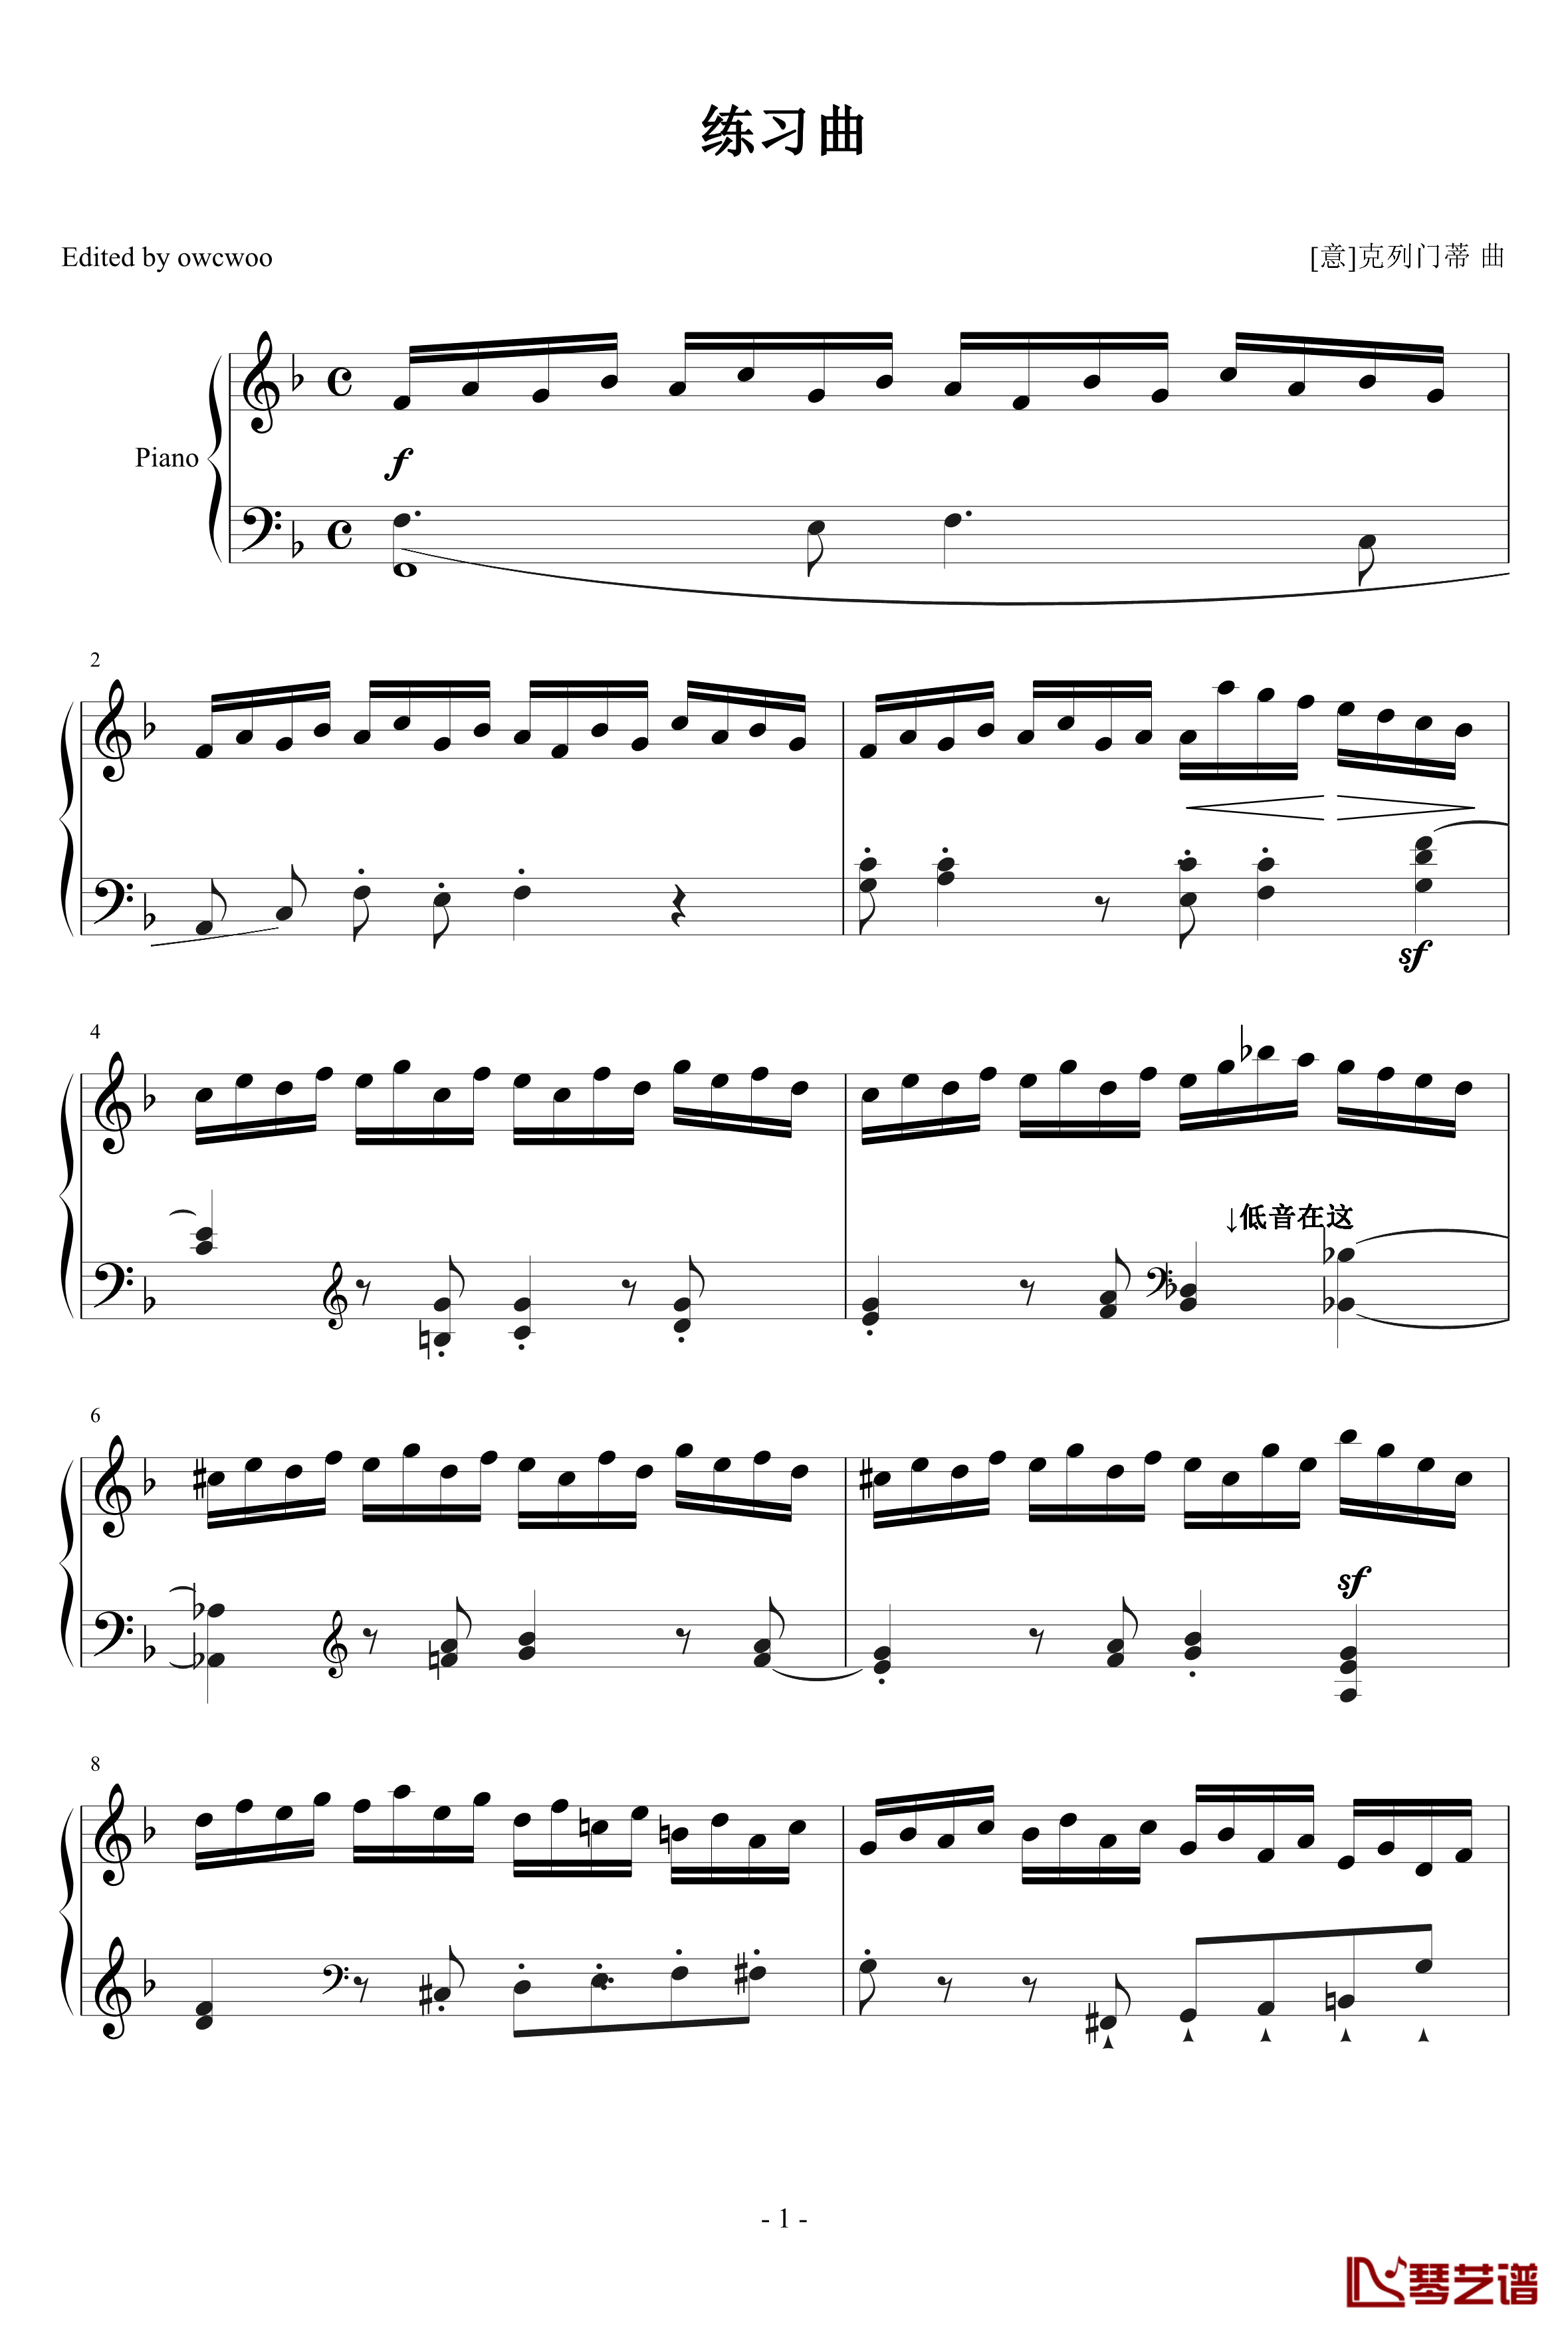 克列门蒂练习曲No.13钢琴谱-克来门蒂1